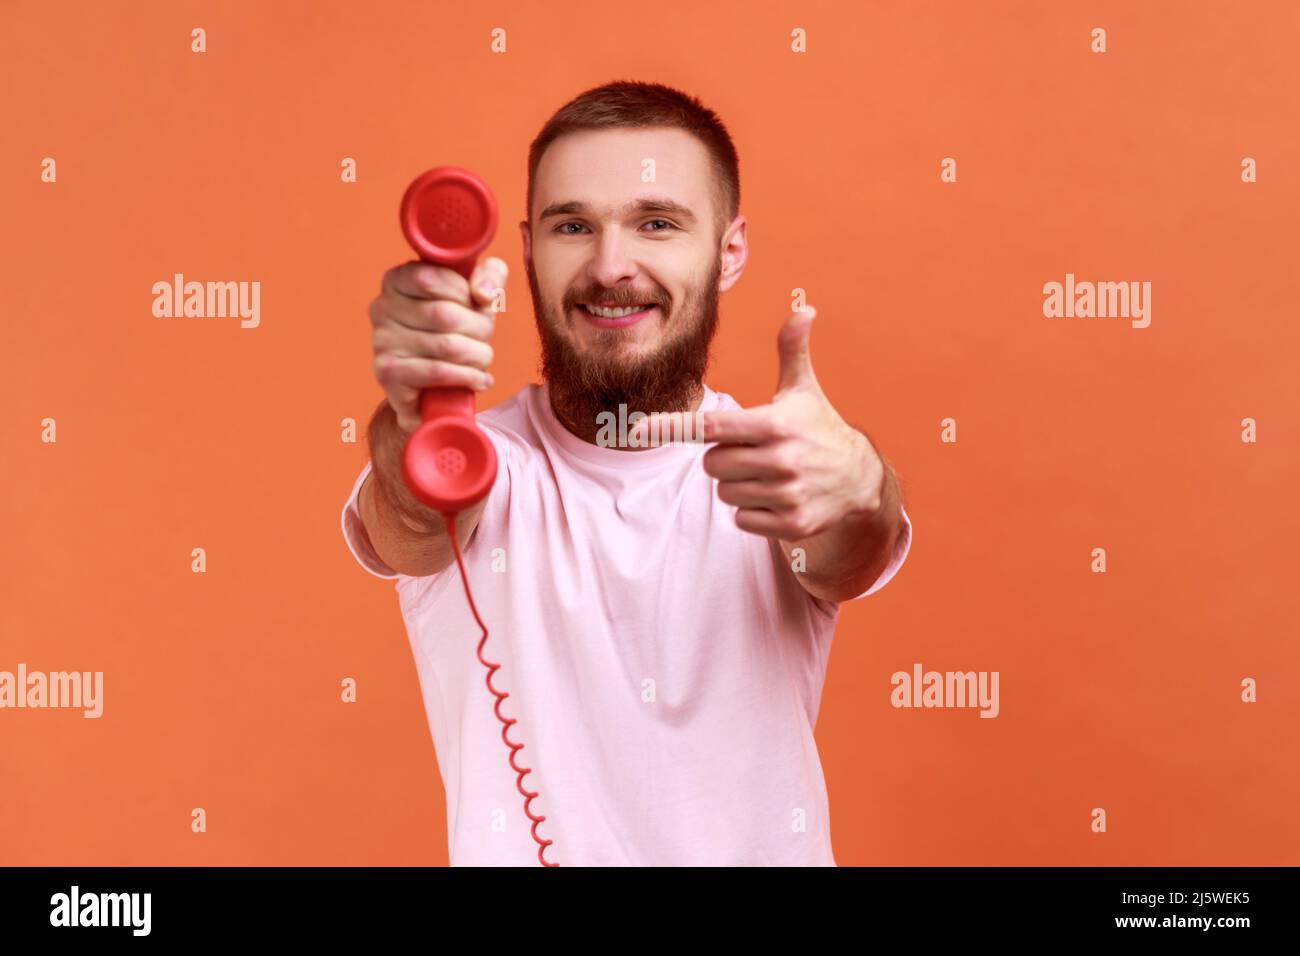 Ritratto di sorridente uomo bearded puntando il dito contro il telefono retro ricevitore alla fotocamera, chiedendo di rispondere telefono, indossando una T-shirt rosa. Studio interno girato isolato su sfondo arancione. Foto Stock